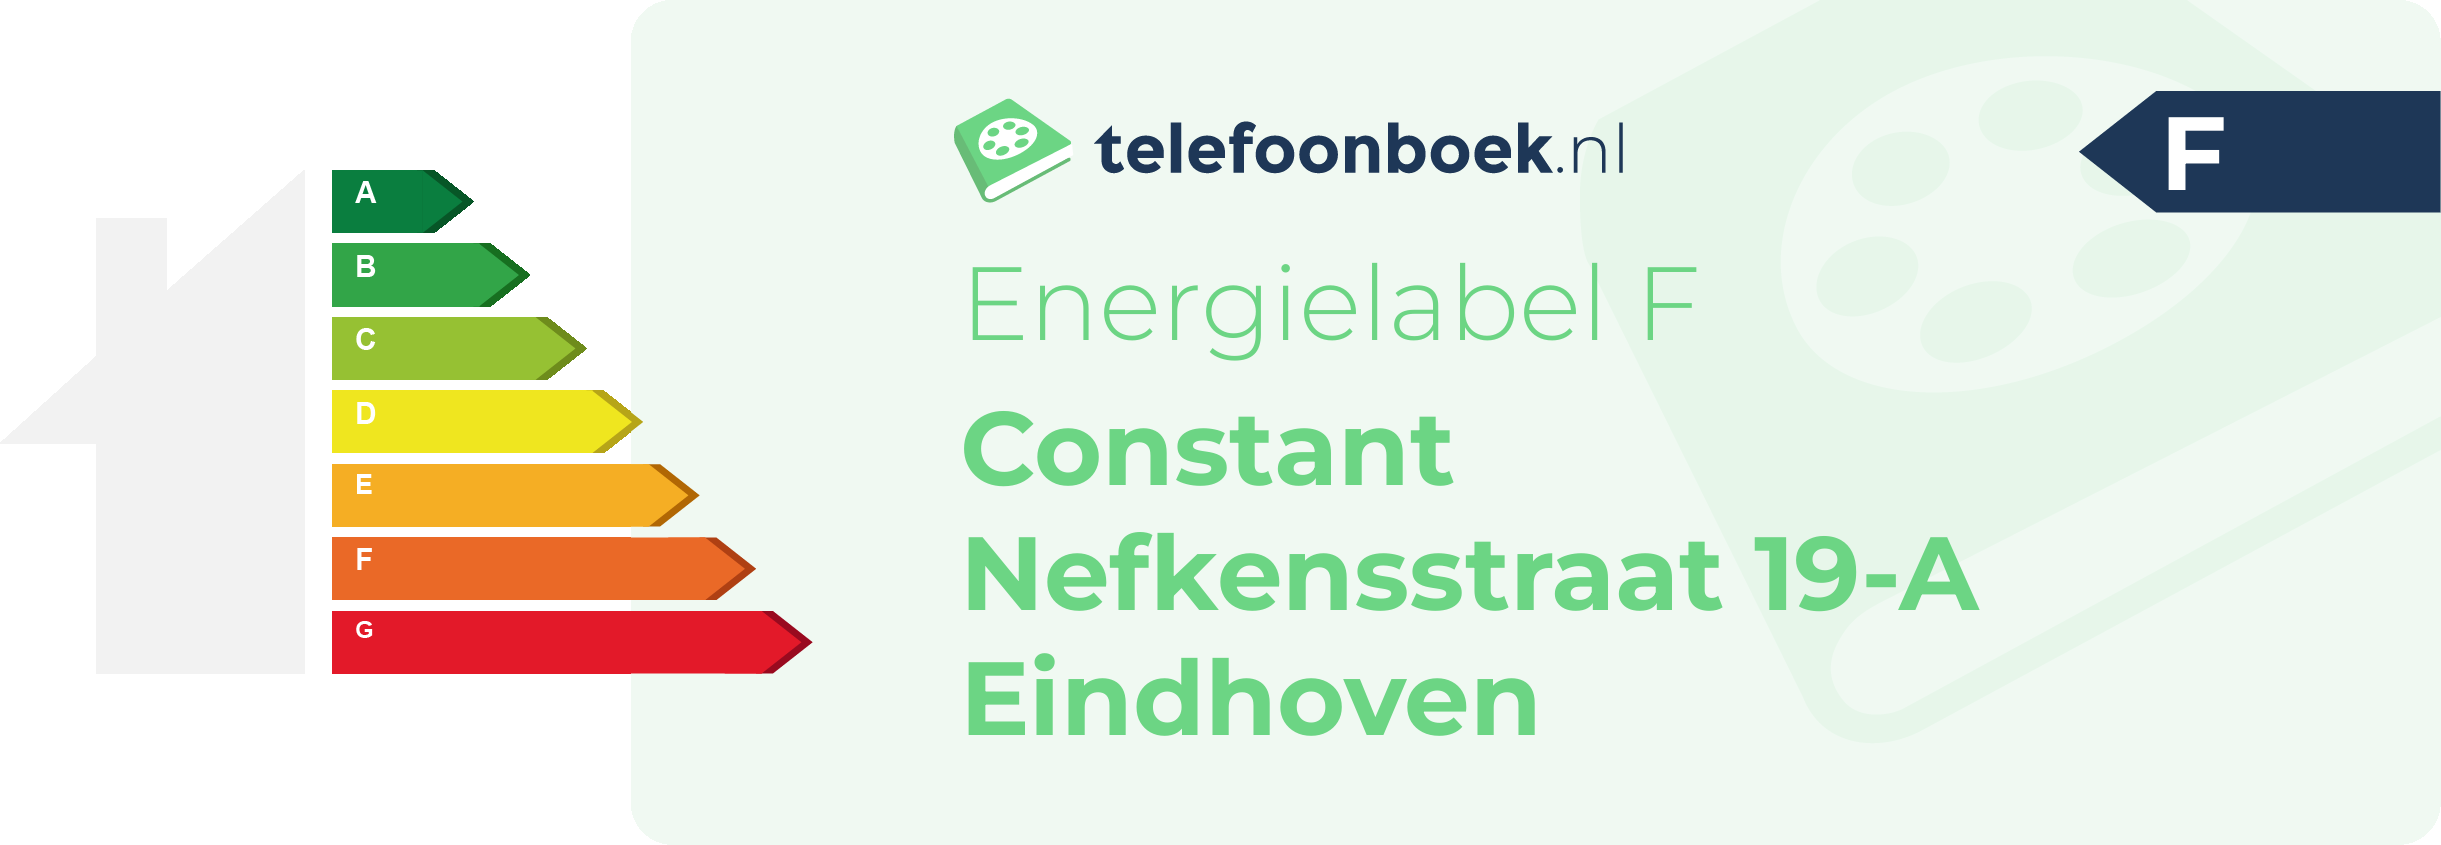 Energielabel Constant Nefkensstraat 19-A Eindhoven